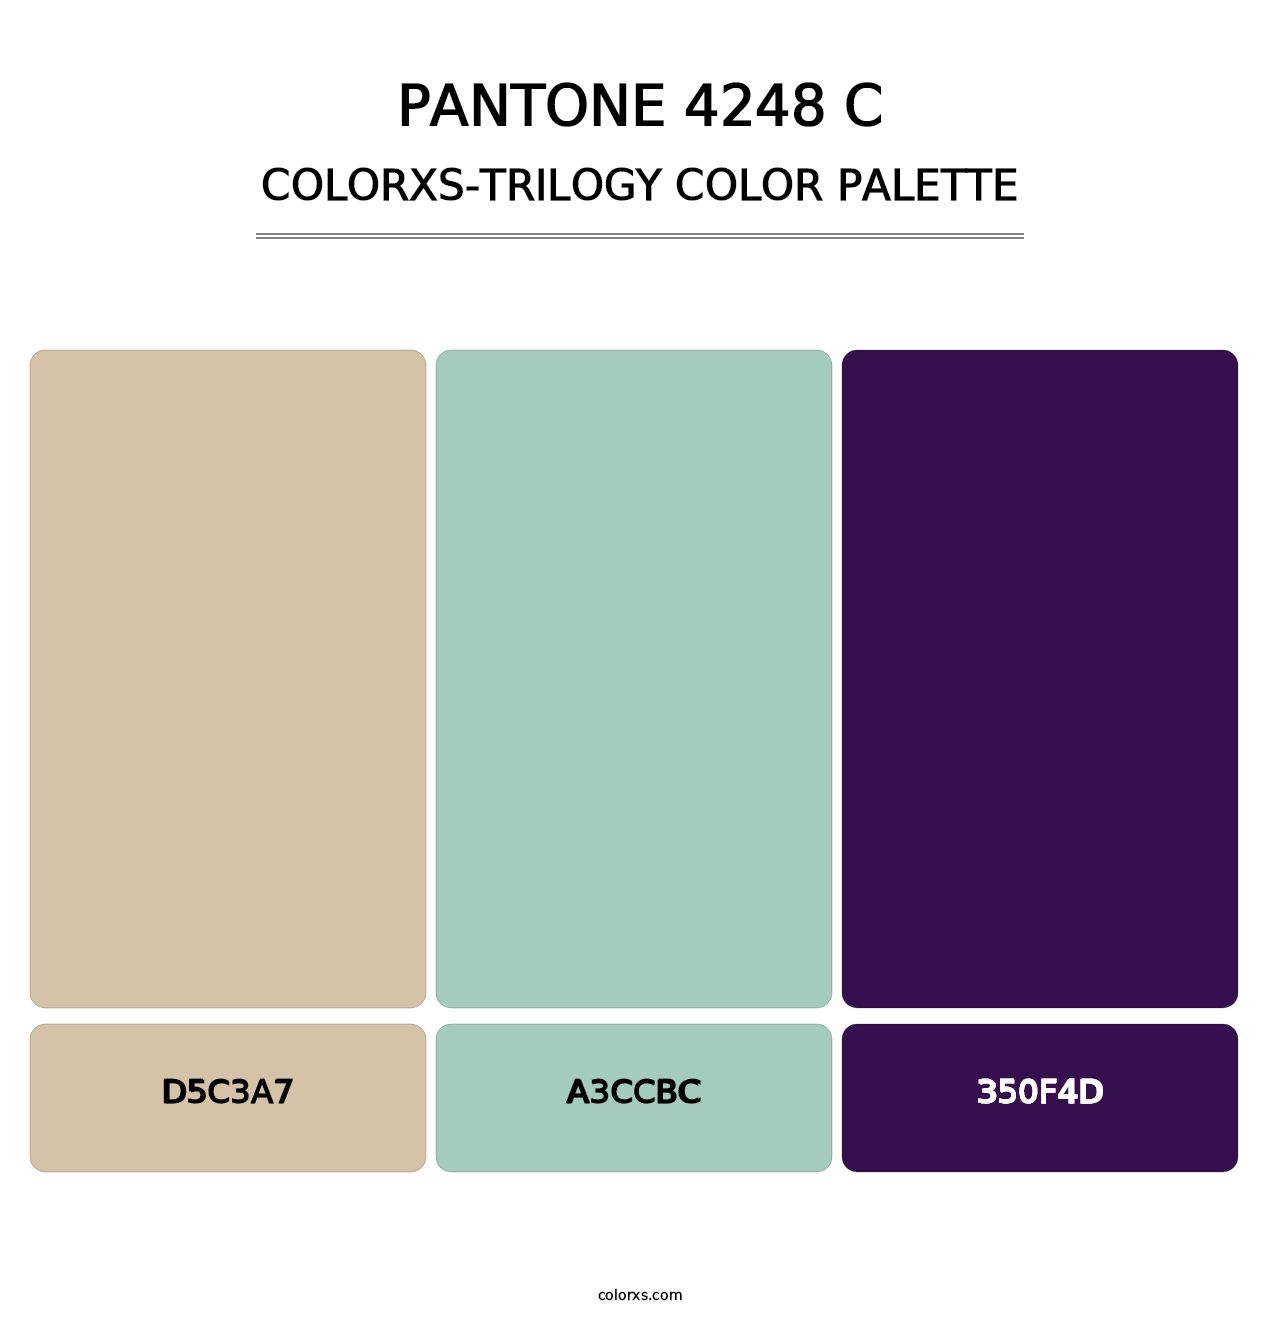 PANTONE 4248 C - Colorxs Trilogy Palette